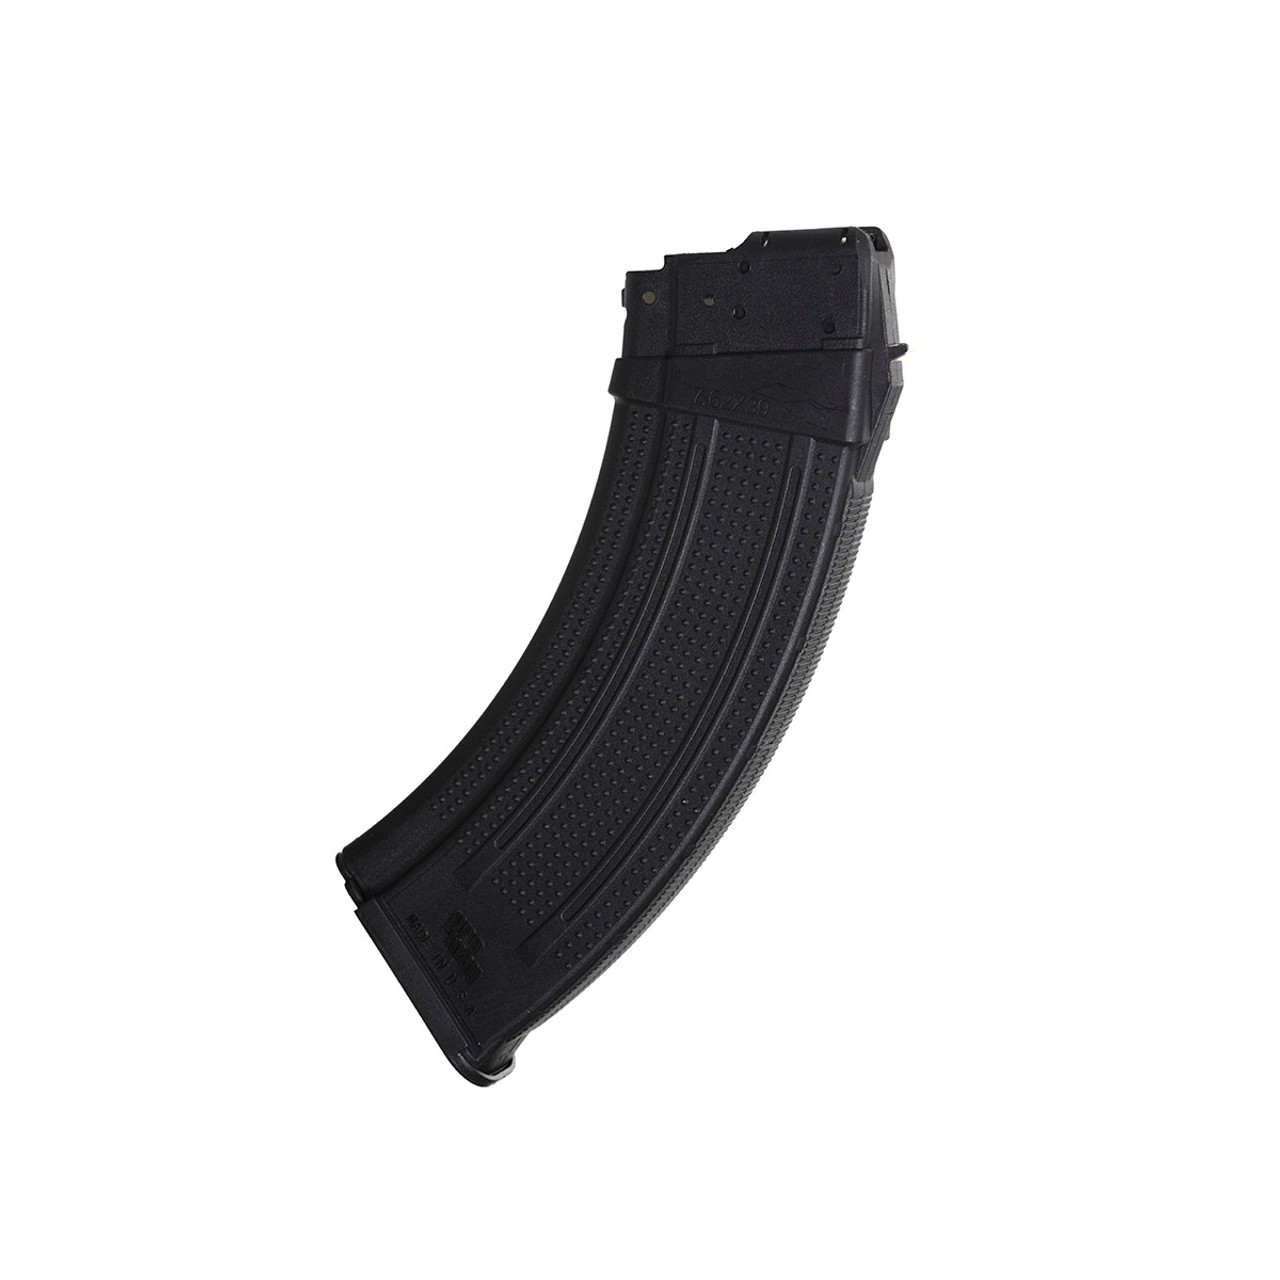 Zásobník Promag AK-47 Steel Polymer, 30 ran, Černá